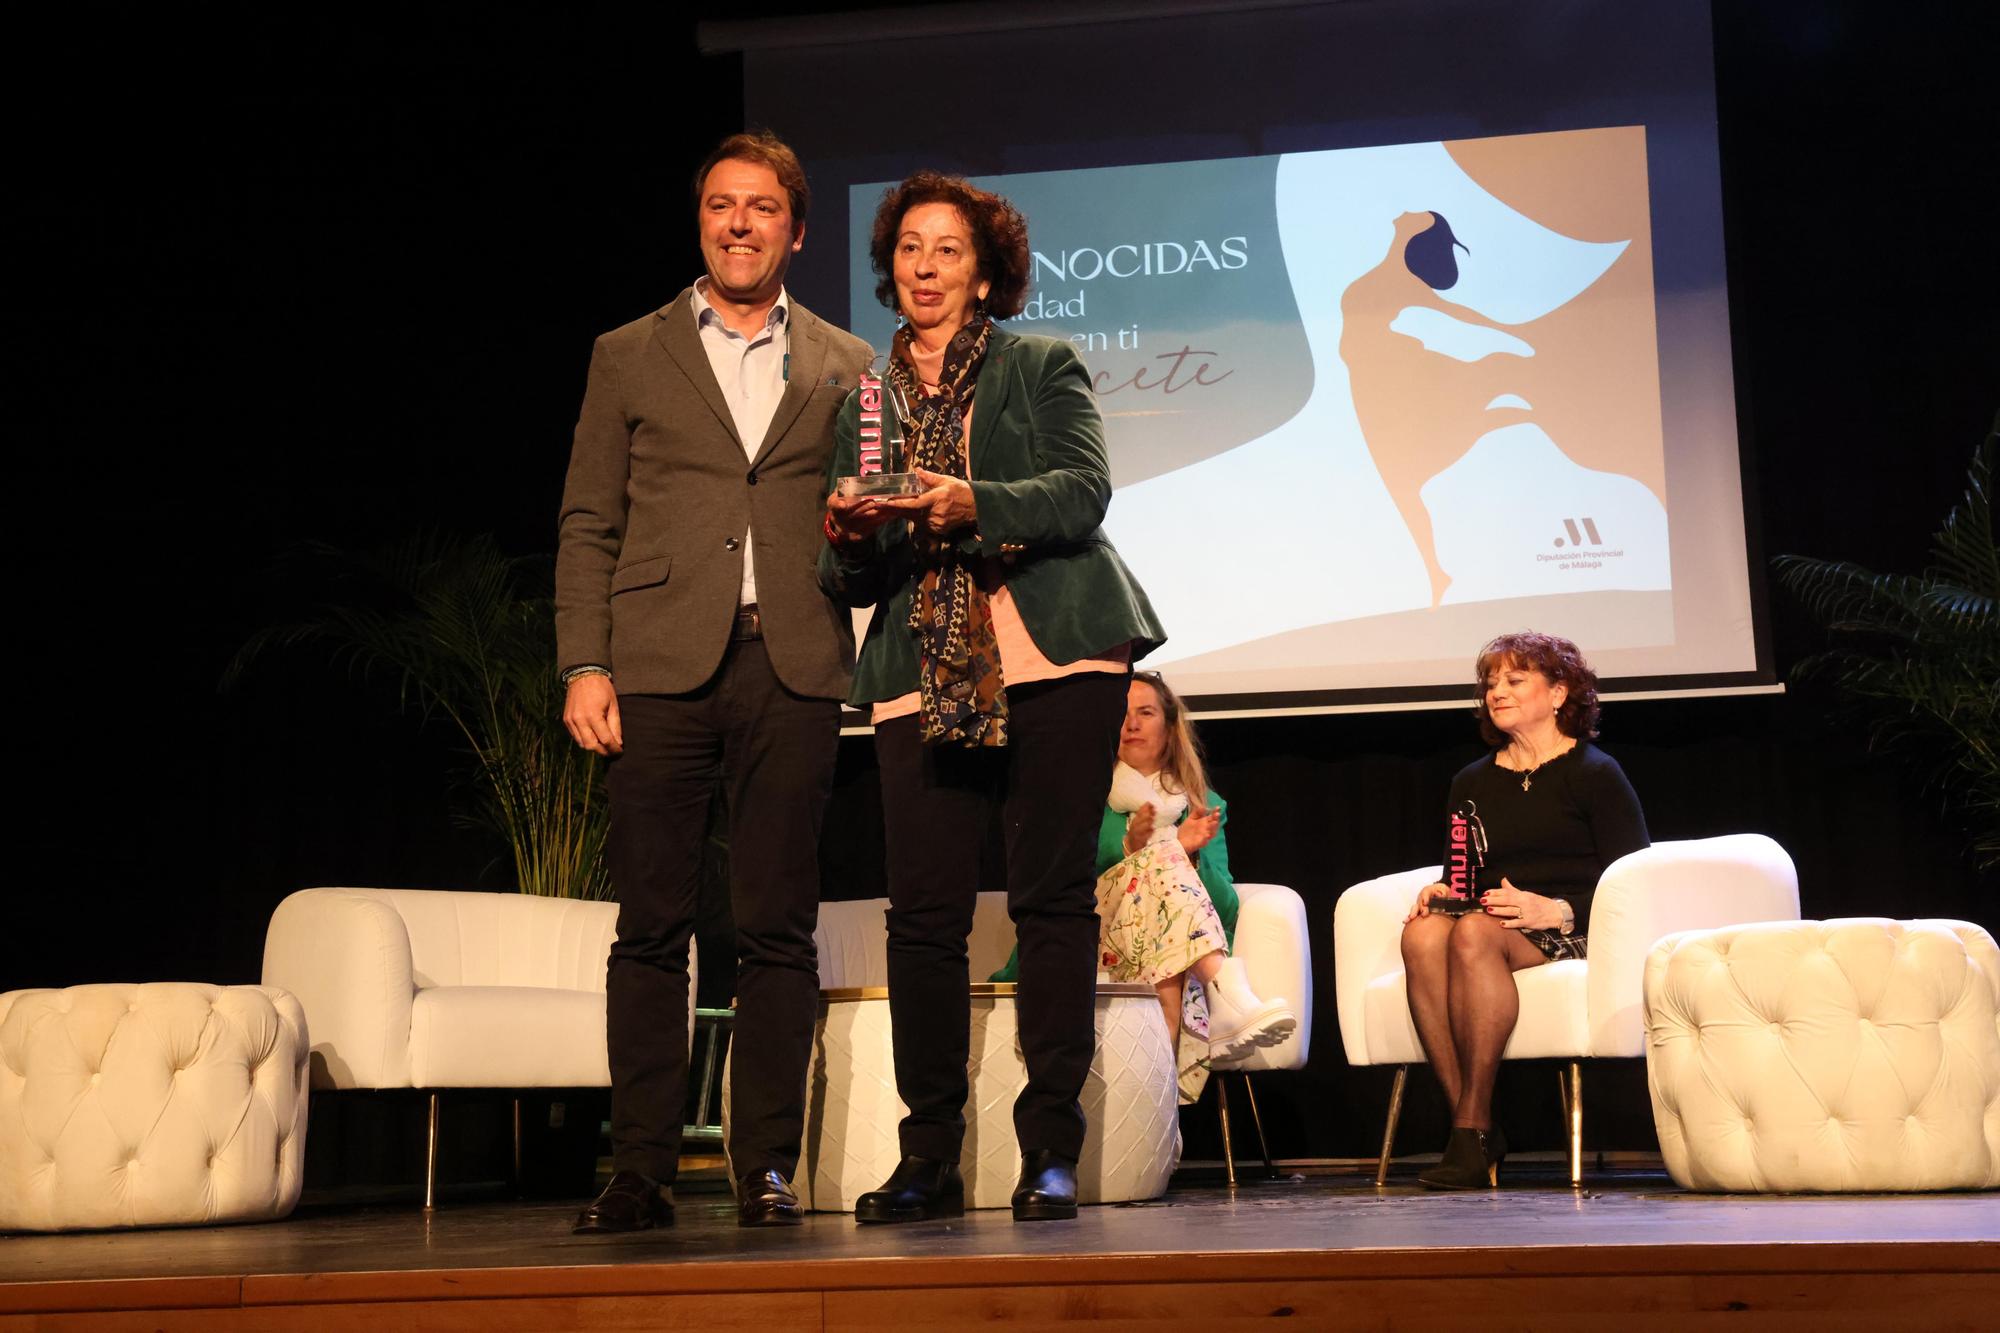 La Diputación de Málaga premia en su gala Reconocidas a nueve mujeres